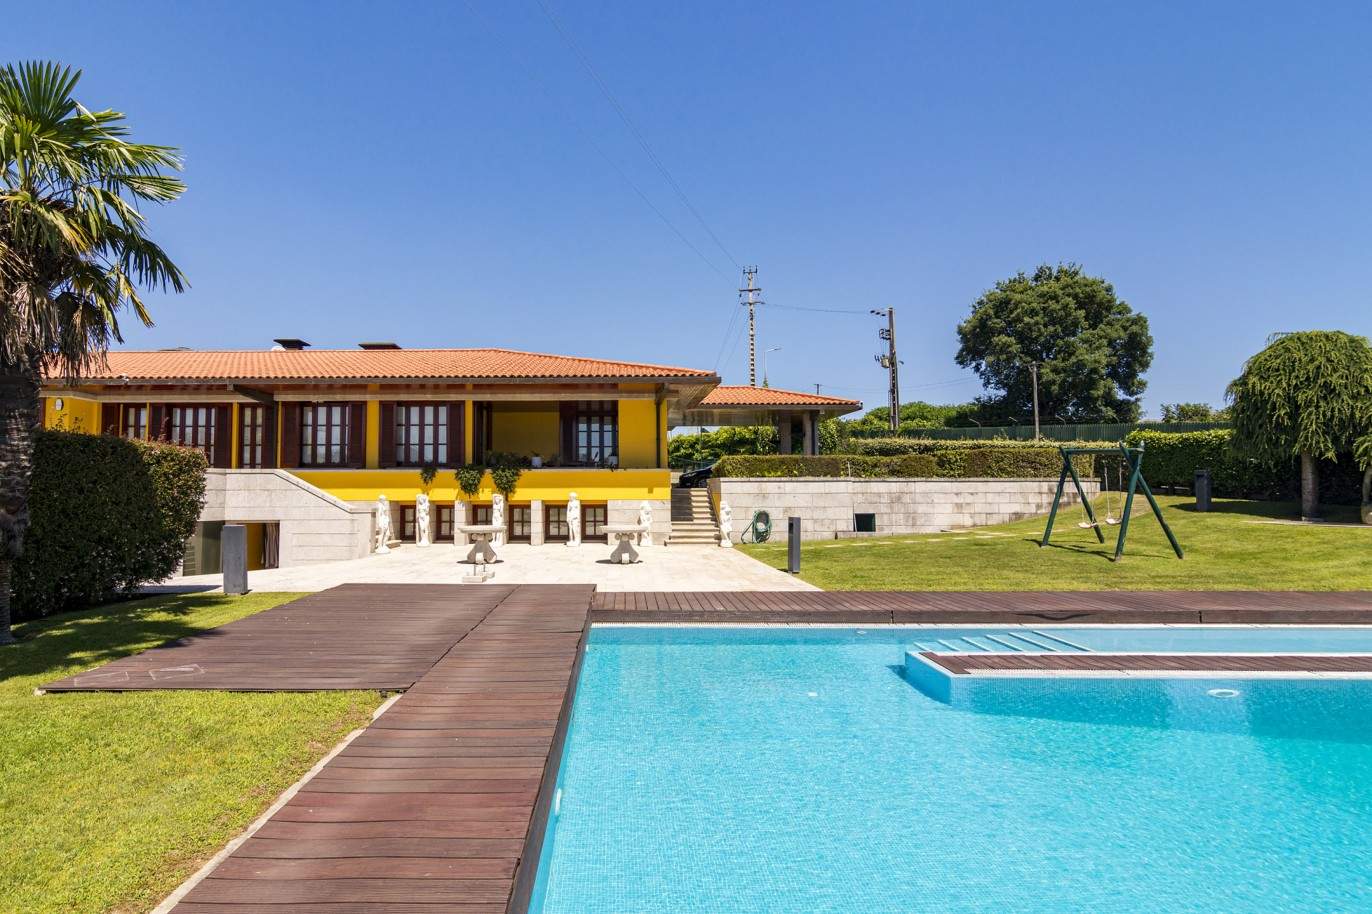 Venda: Propriedade com piscina, lagos e jardins, em Barcelos_202967